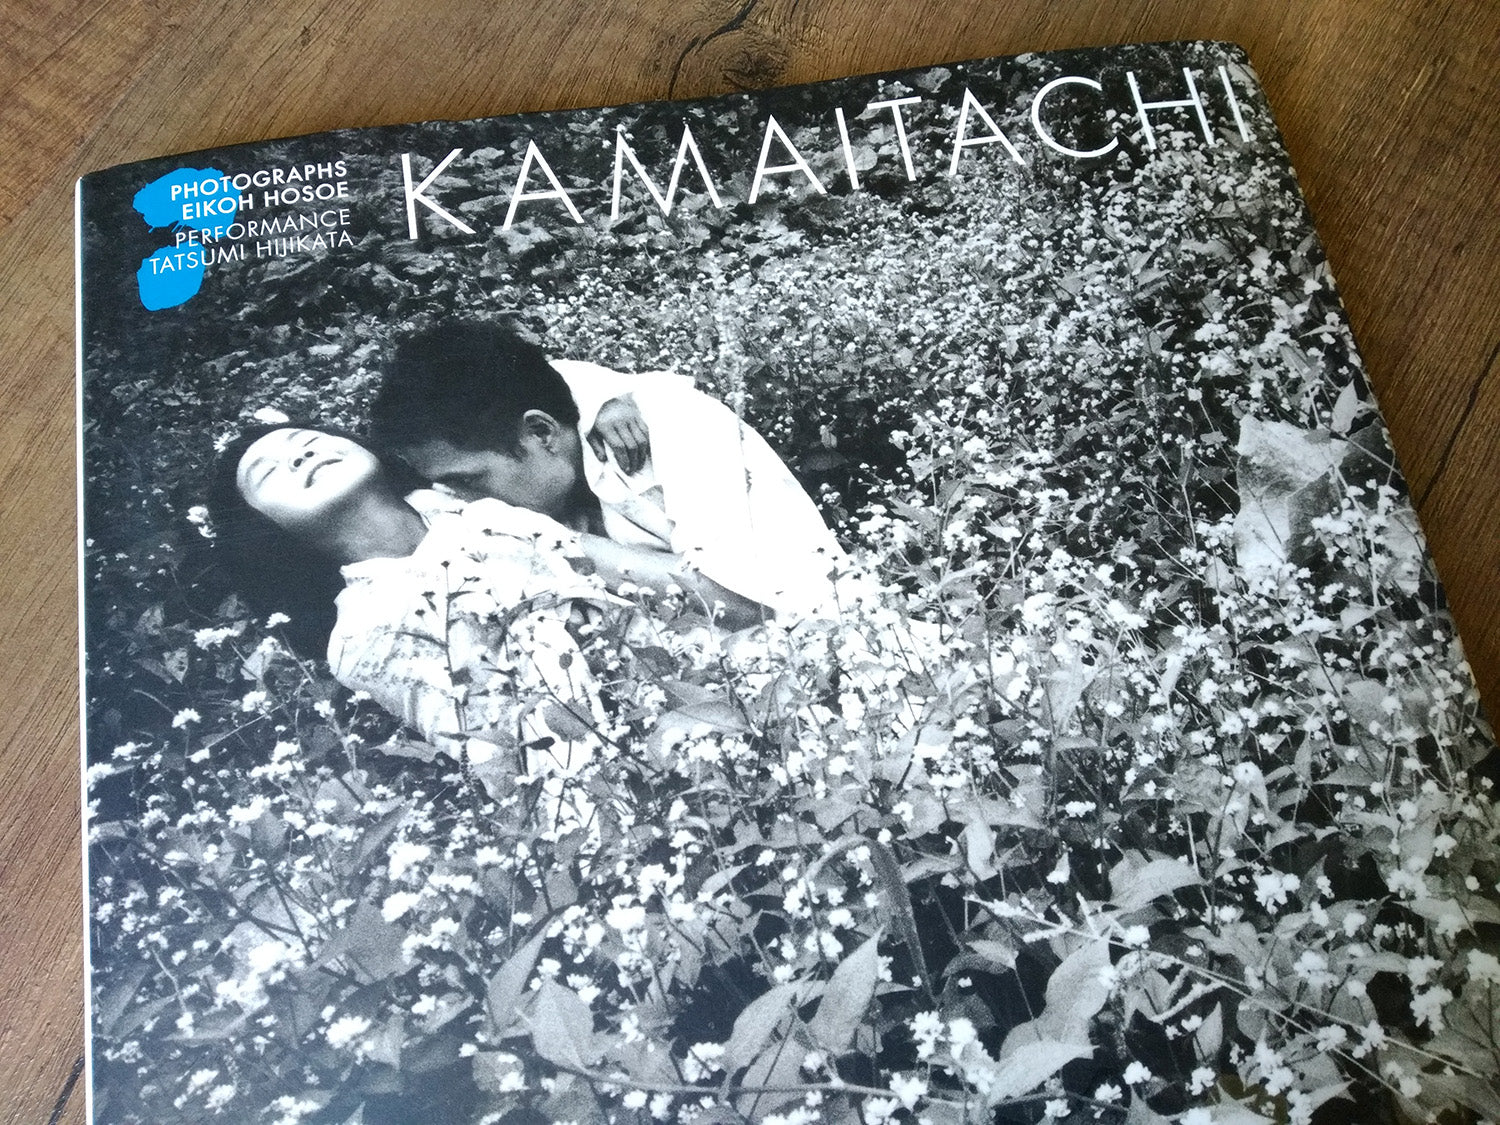 Kamaitachi 鎌鼬